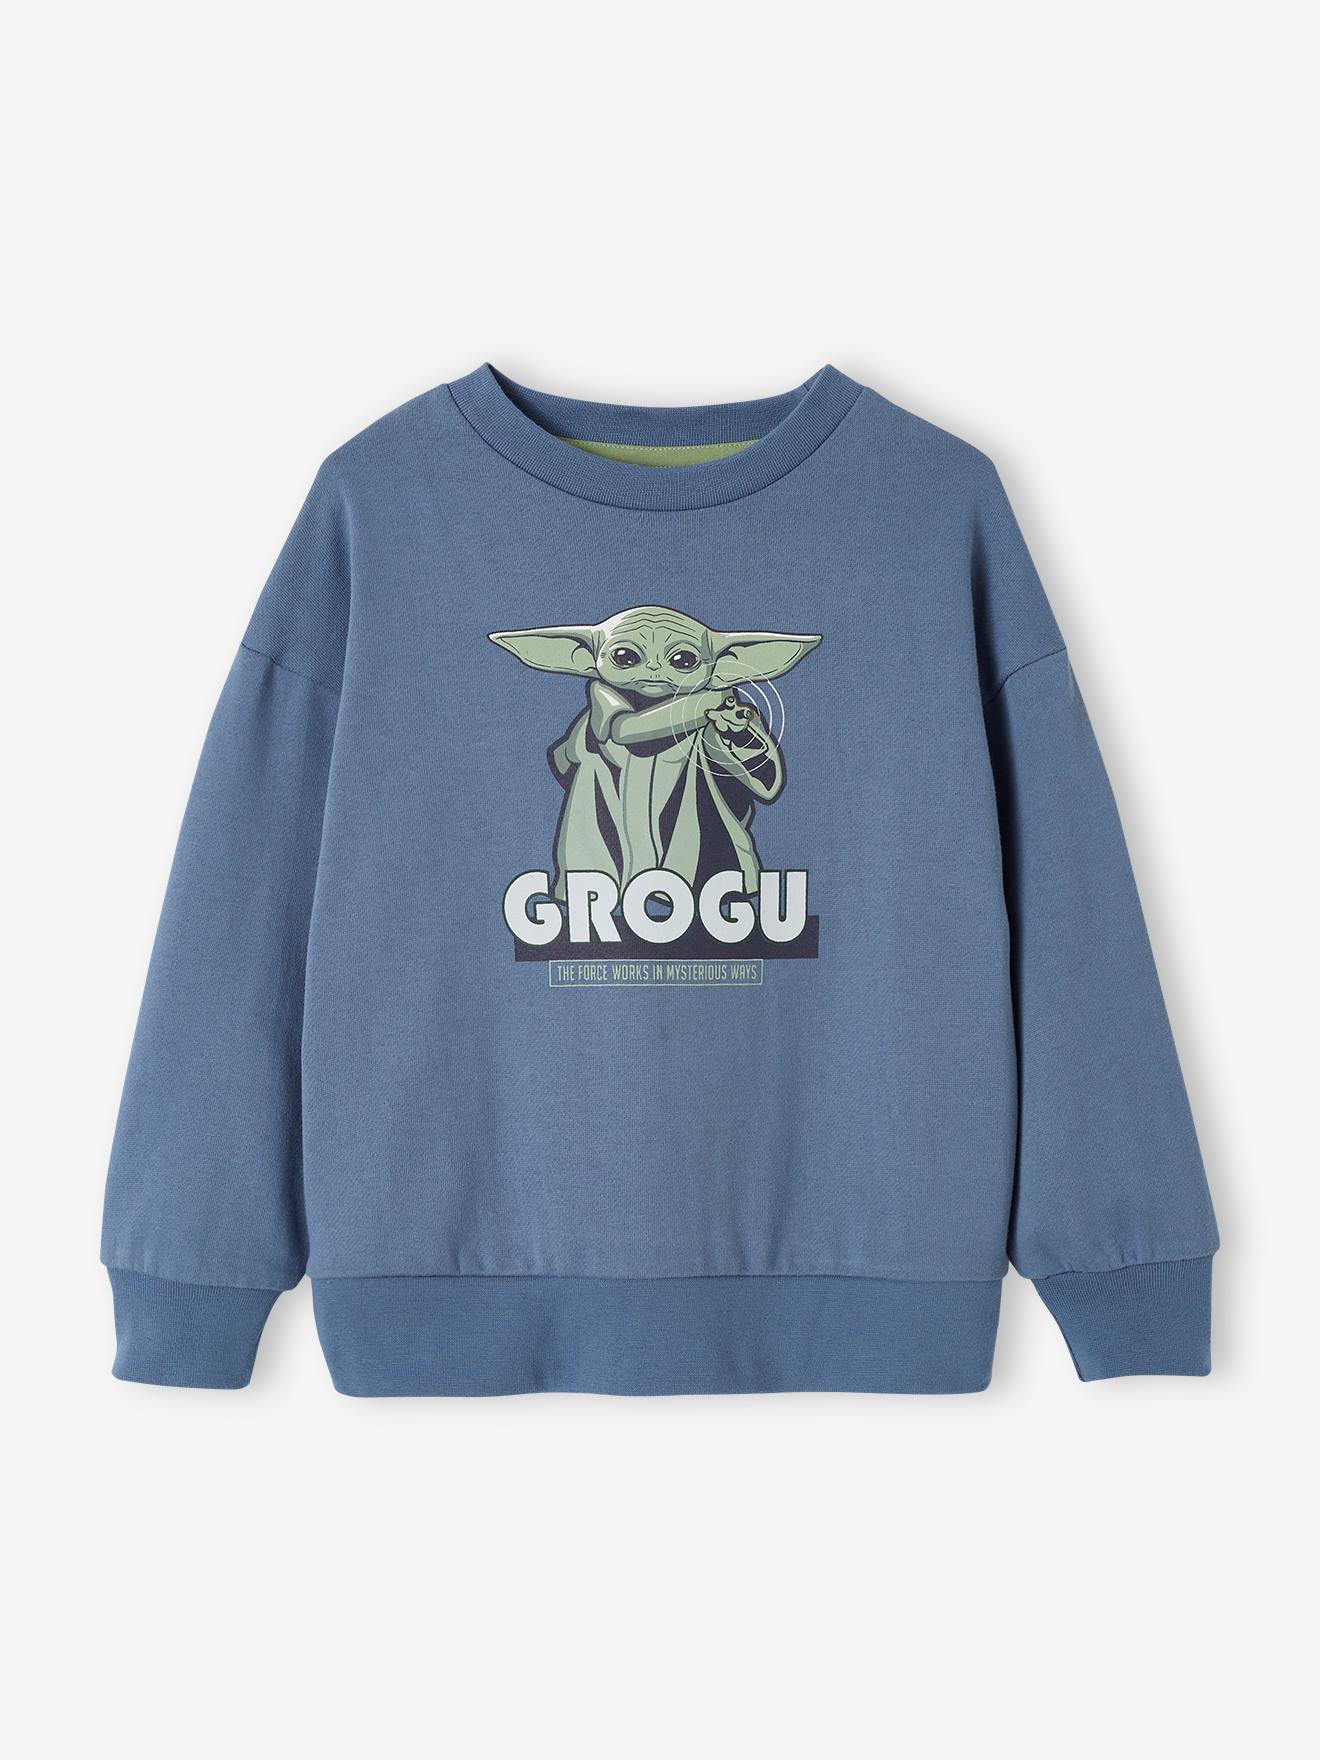 Star Wars(r) Grogu Sweatshirt for Boys denim blue